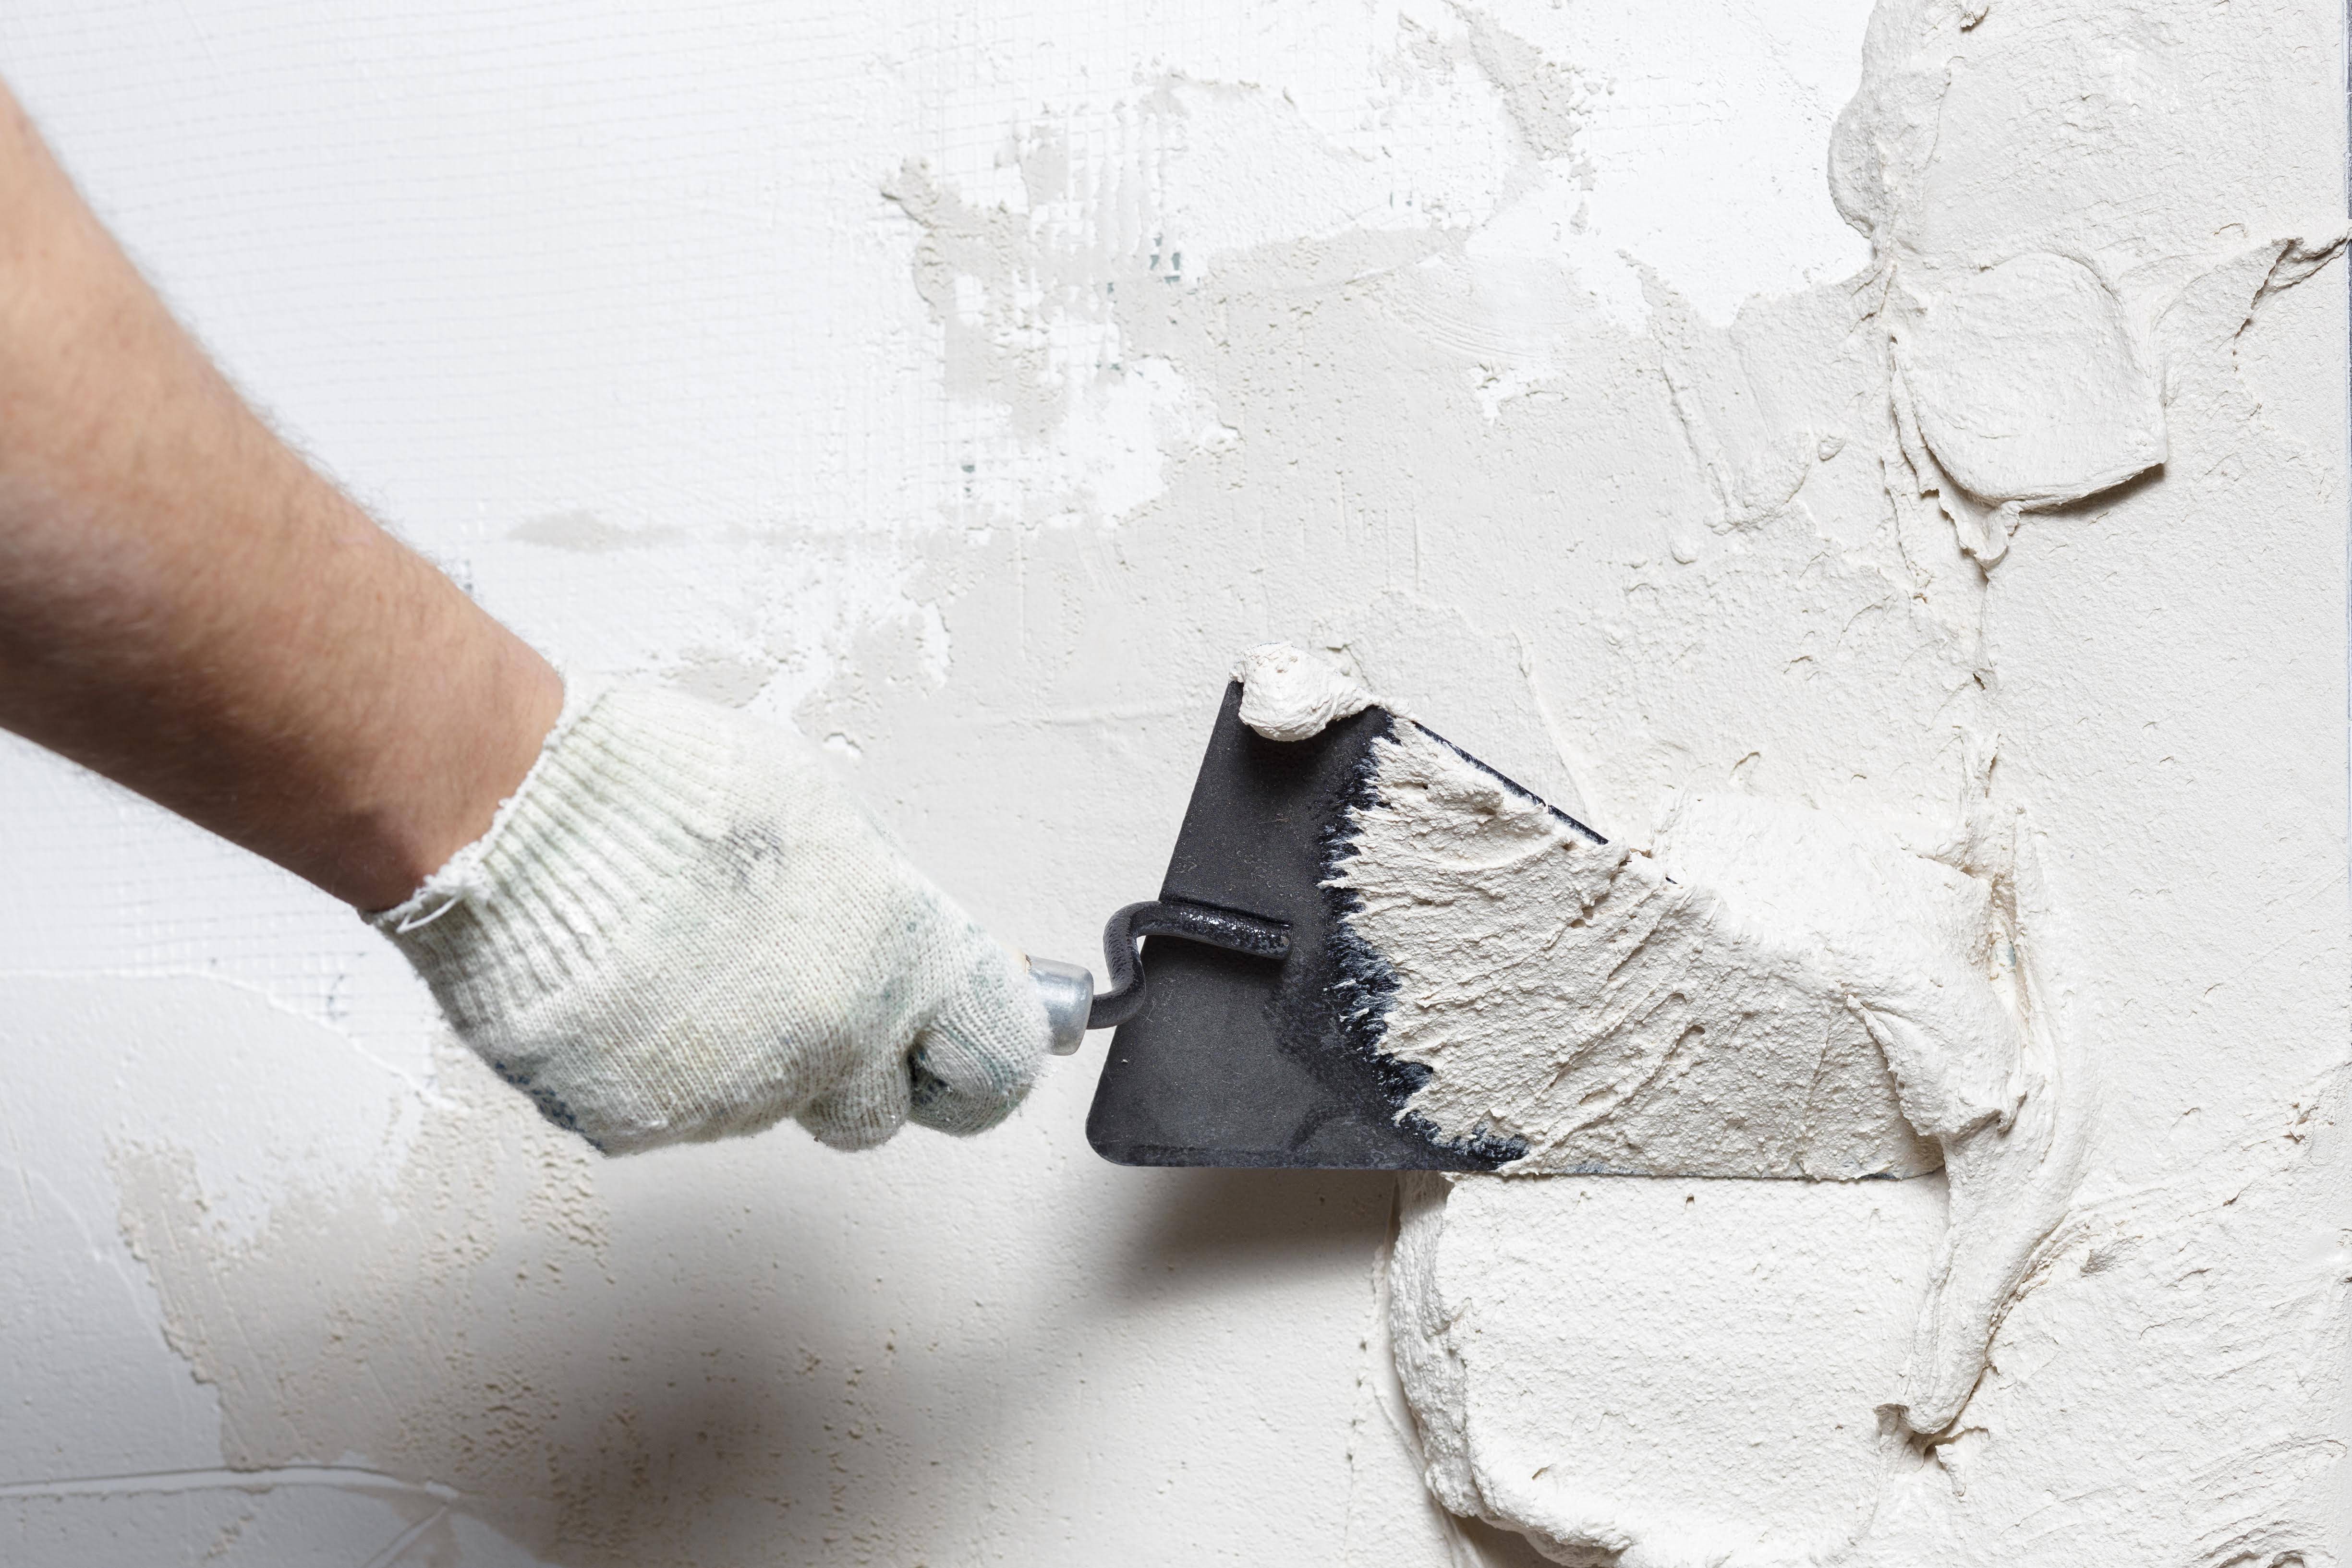 Штукатурка под покраску: требования к отделке стен, выбор материала, технология и видео инструкция как штукатурить под краску или обои своими руками